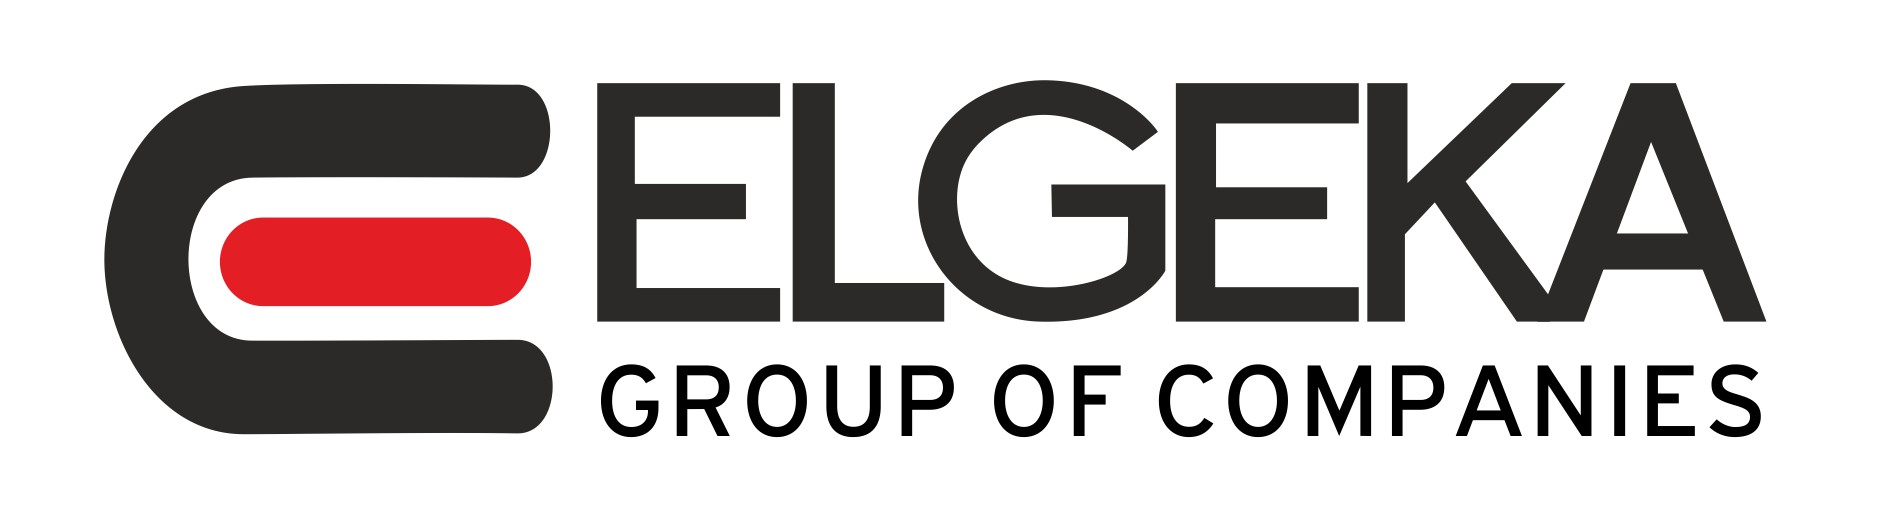 Elgeka Group